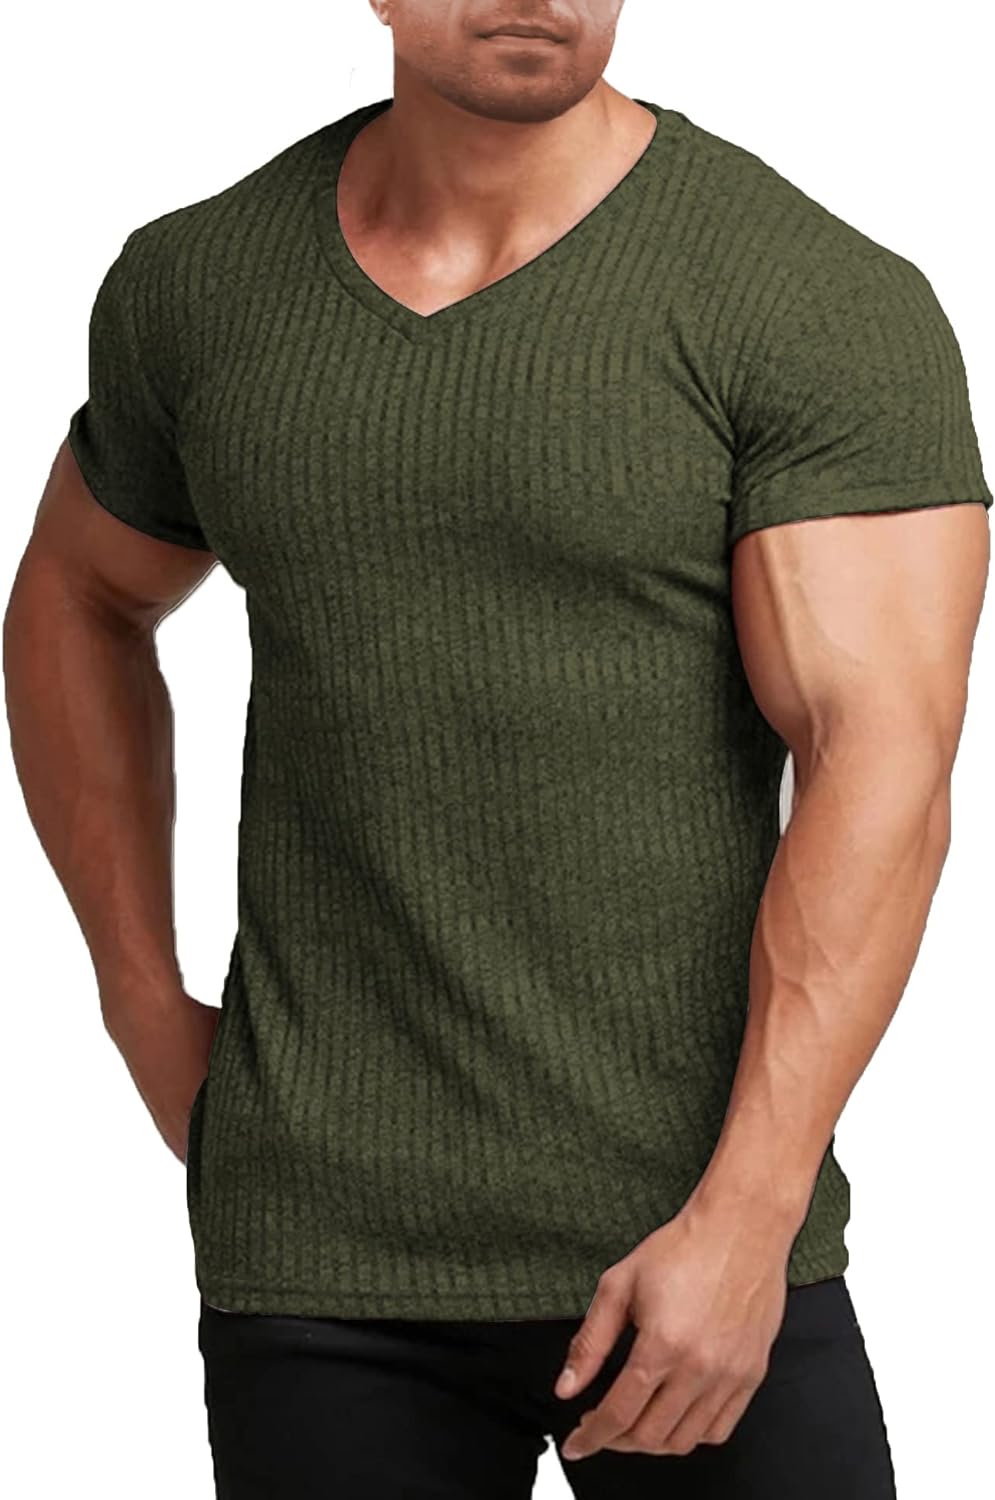 The Dienekes Muscle Shirt